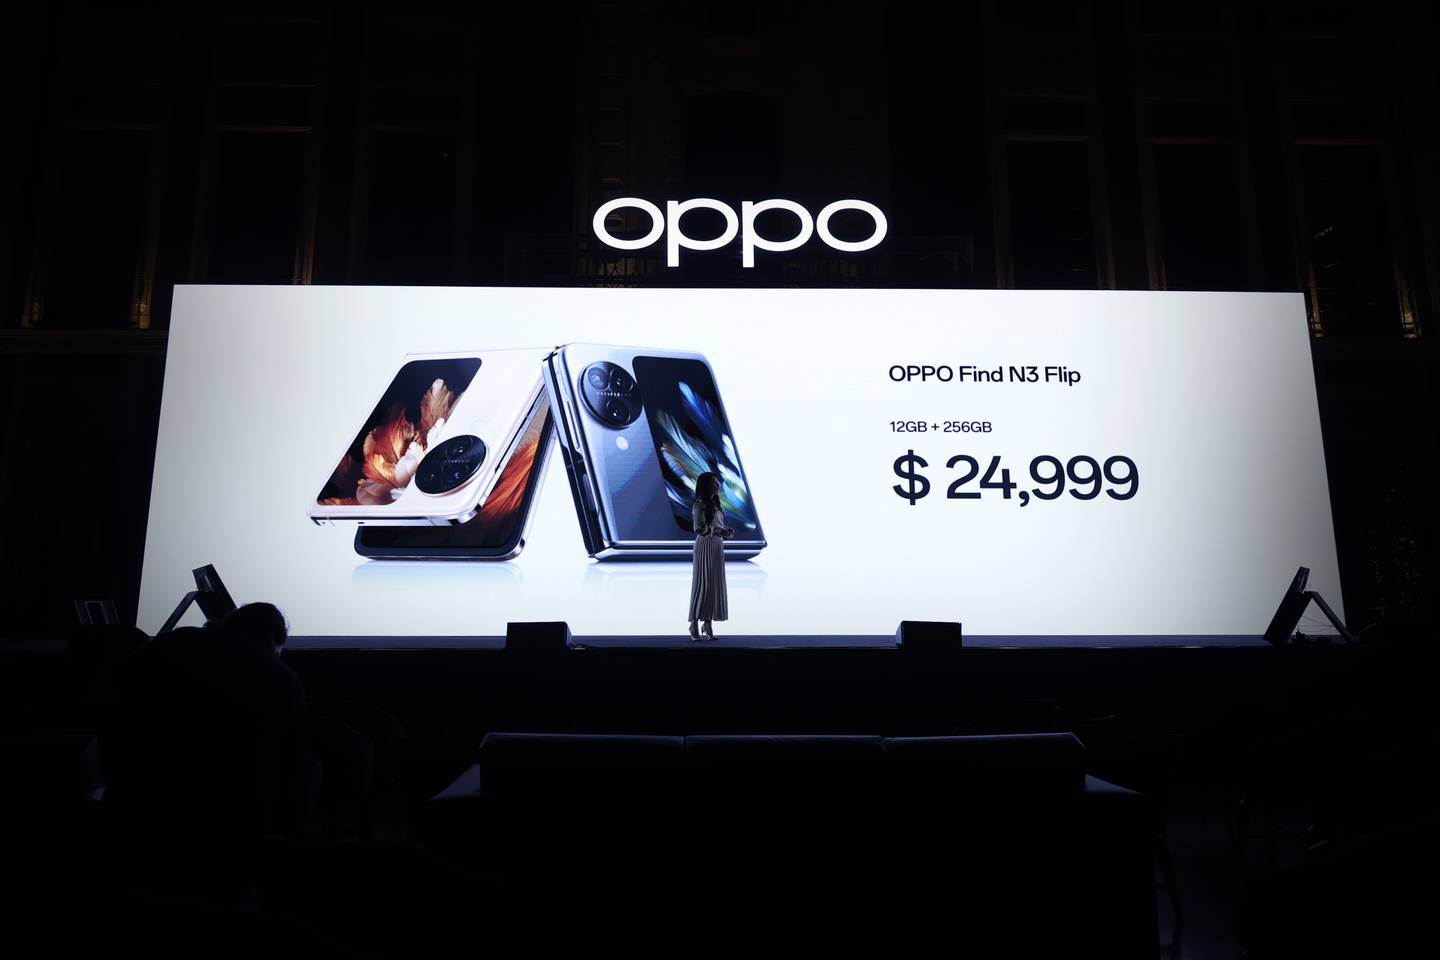 Luego del éxito comercial del modelo anterior el OPPO Find N3 Flip adelanta su lanzamiento en México con especificaciones técnicas de punta para su sector.